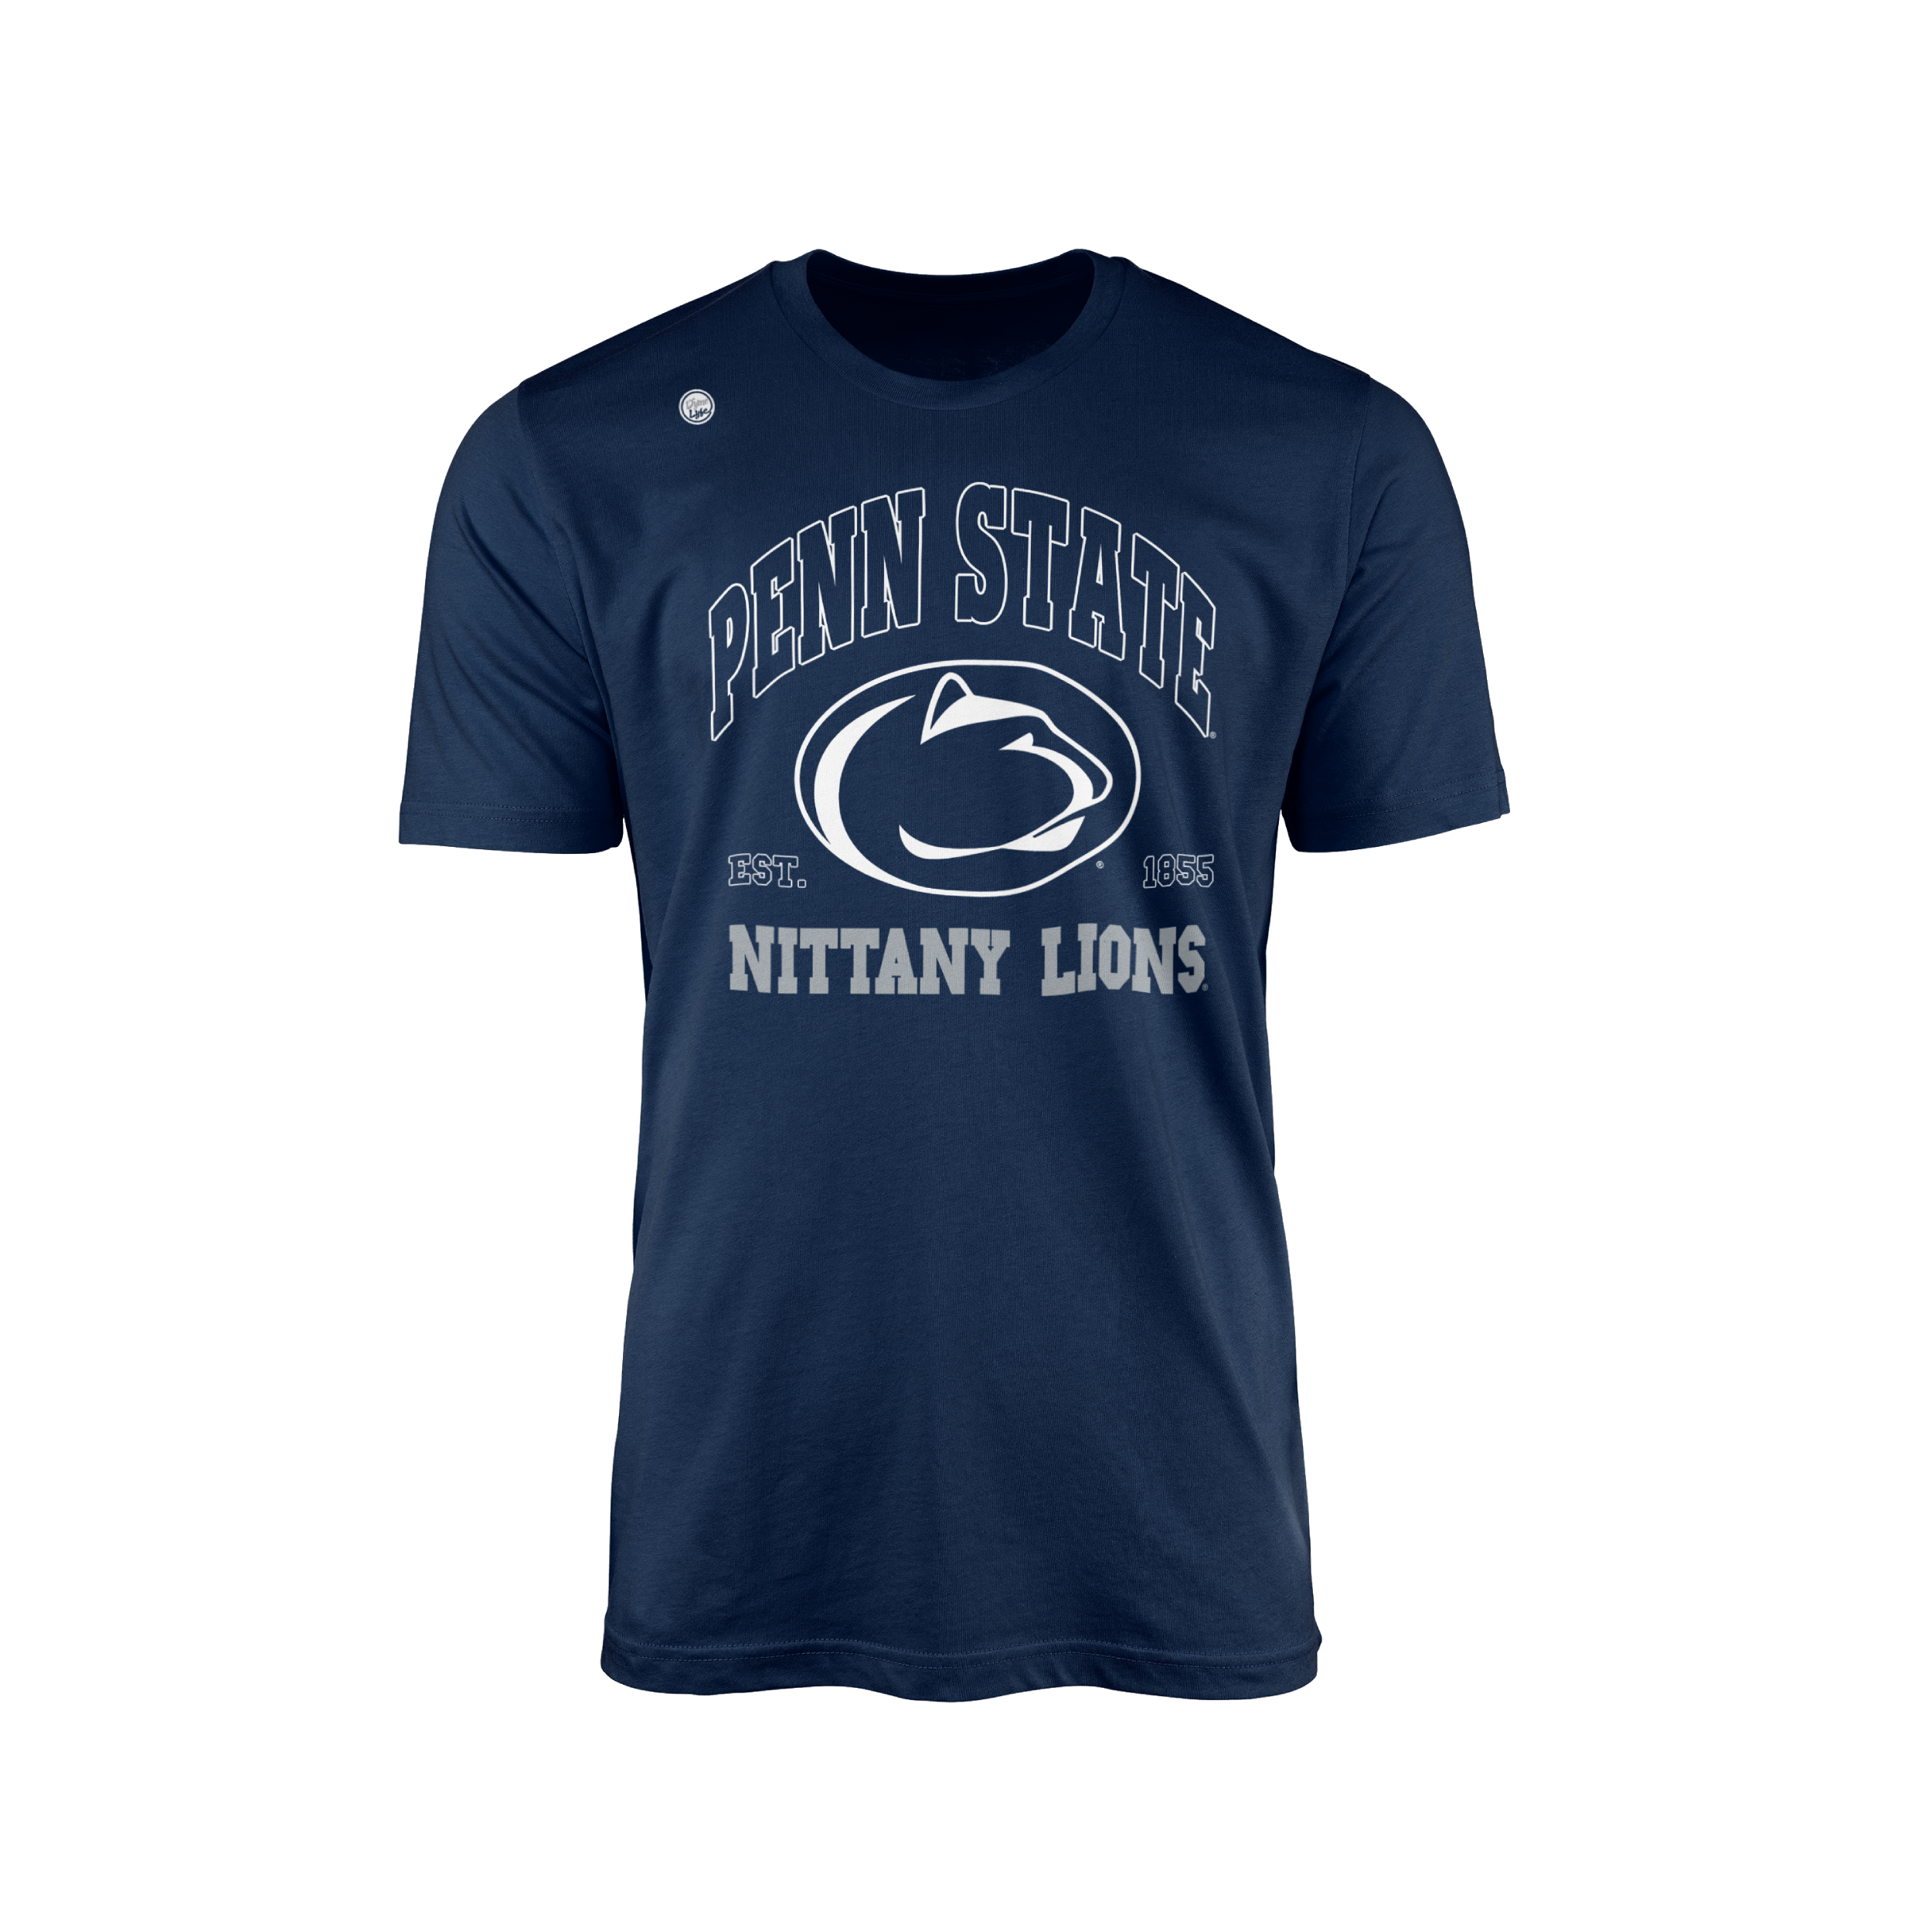 Penn State Nittany Lions Men’s Est. Tee